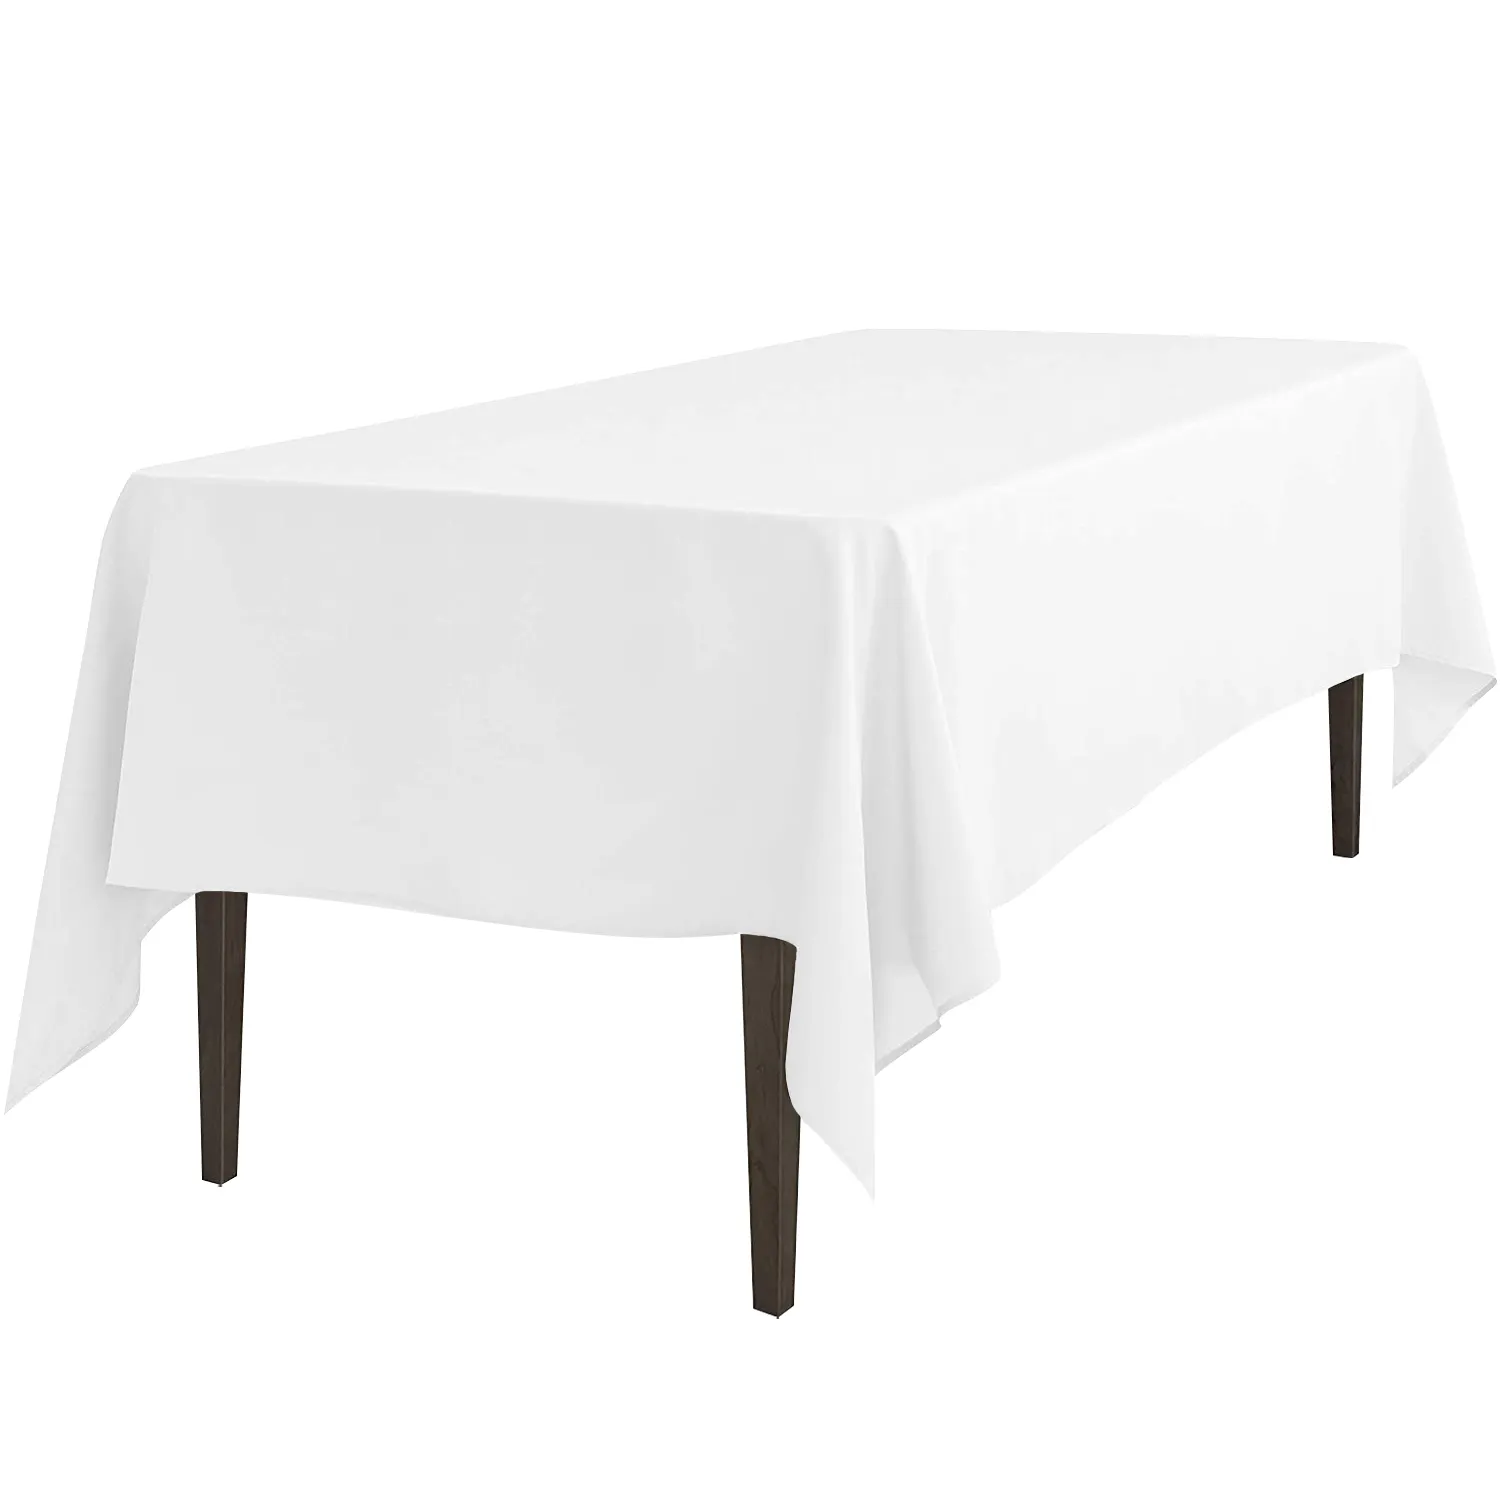 Rechteck Tischdecke 6 Fuß weiß Polyester Party Event Hochzeit Tischdecke Tischdecken